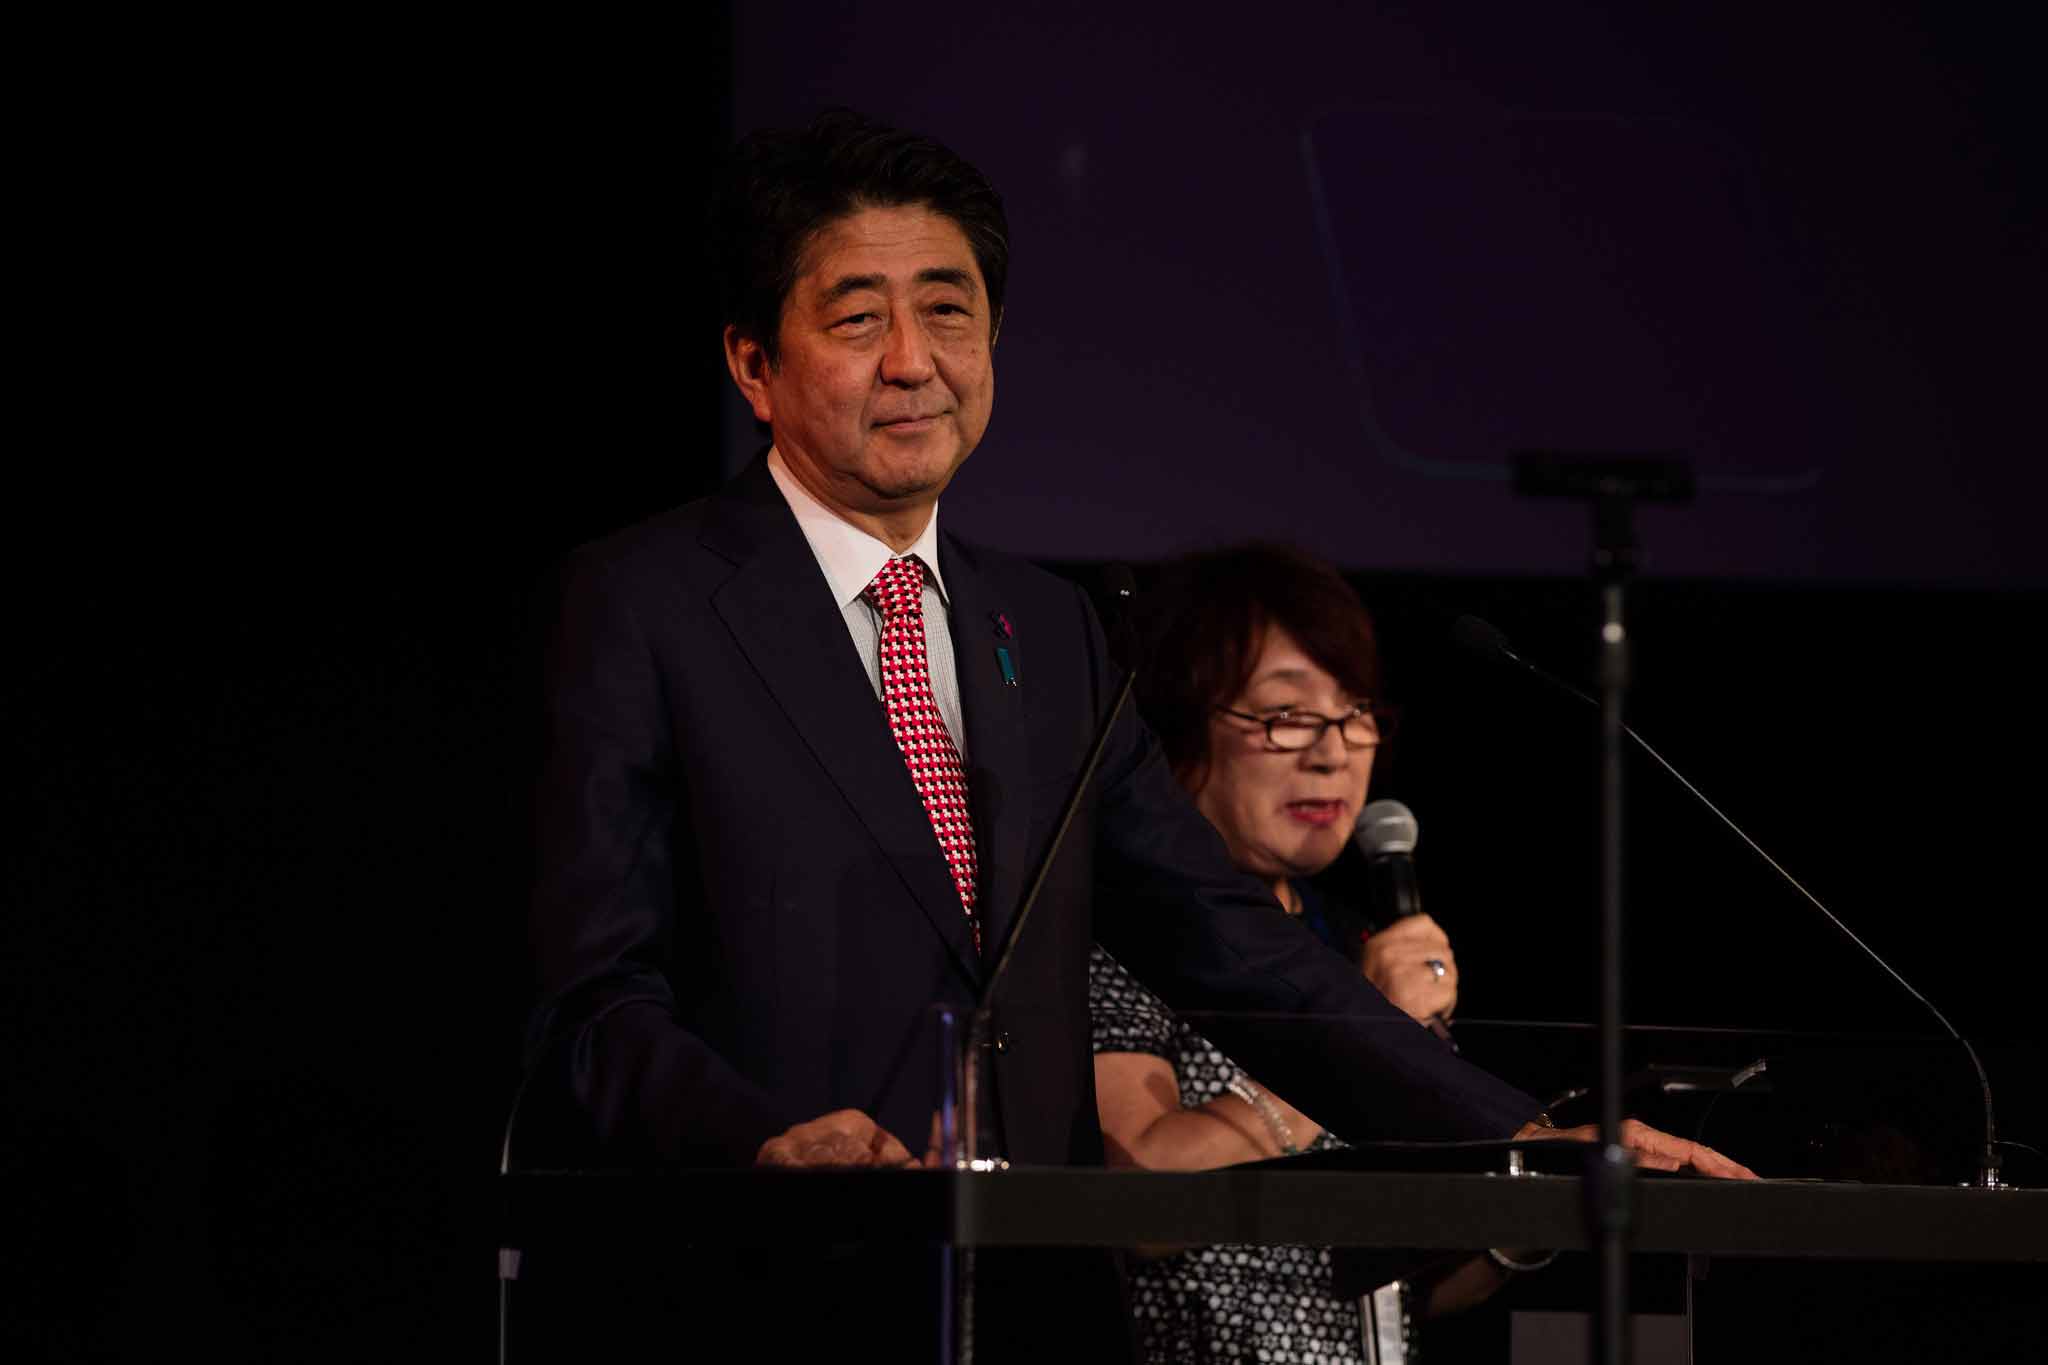 日本首相安倍晋三在heforshe两周年活动上呼吁 建立新世界 Heforshe